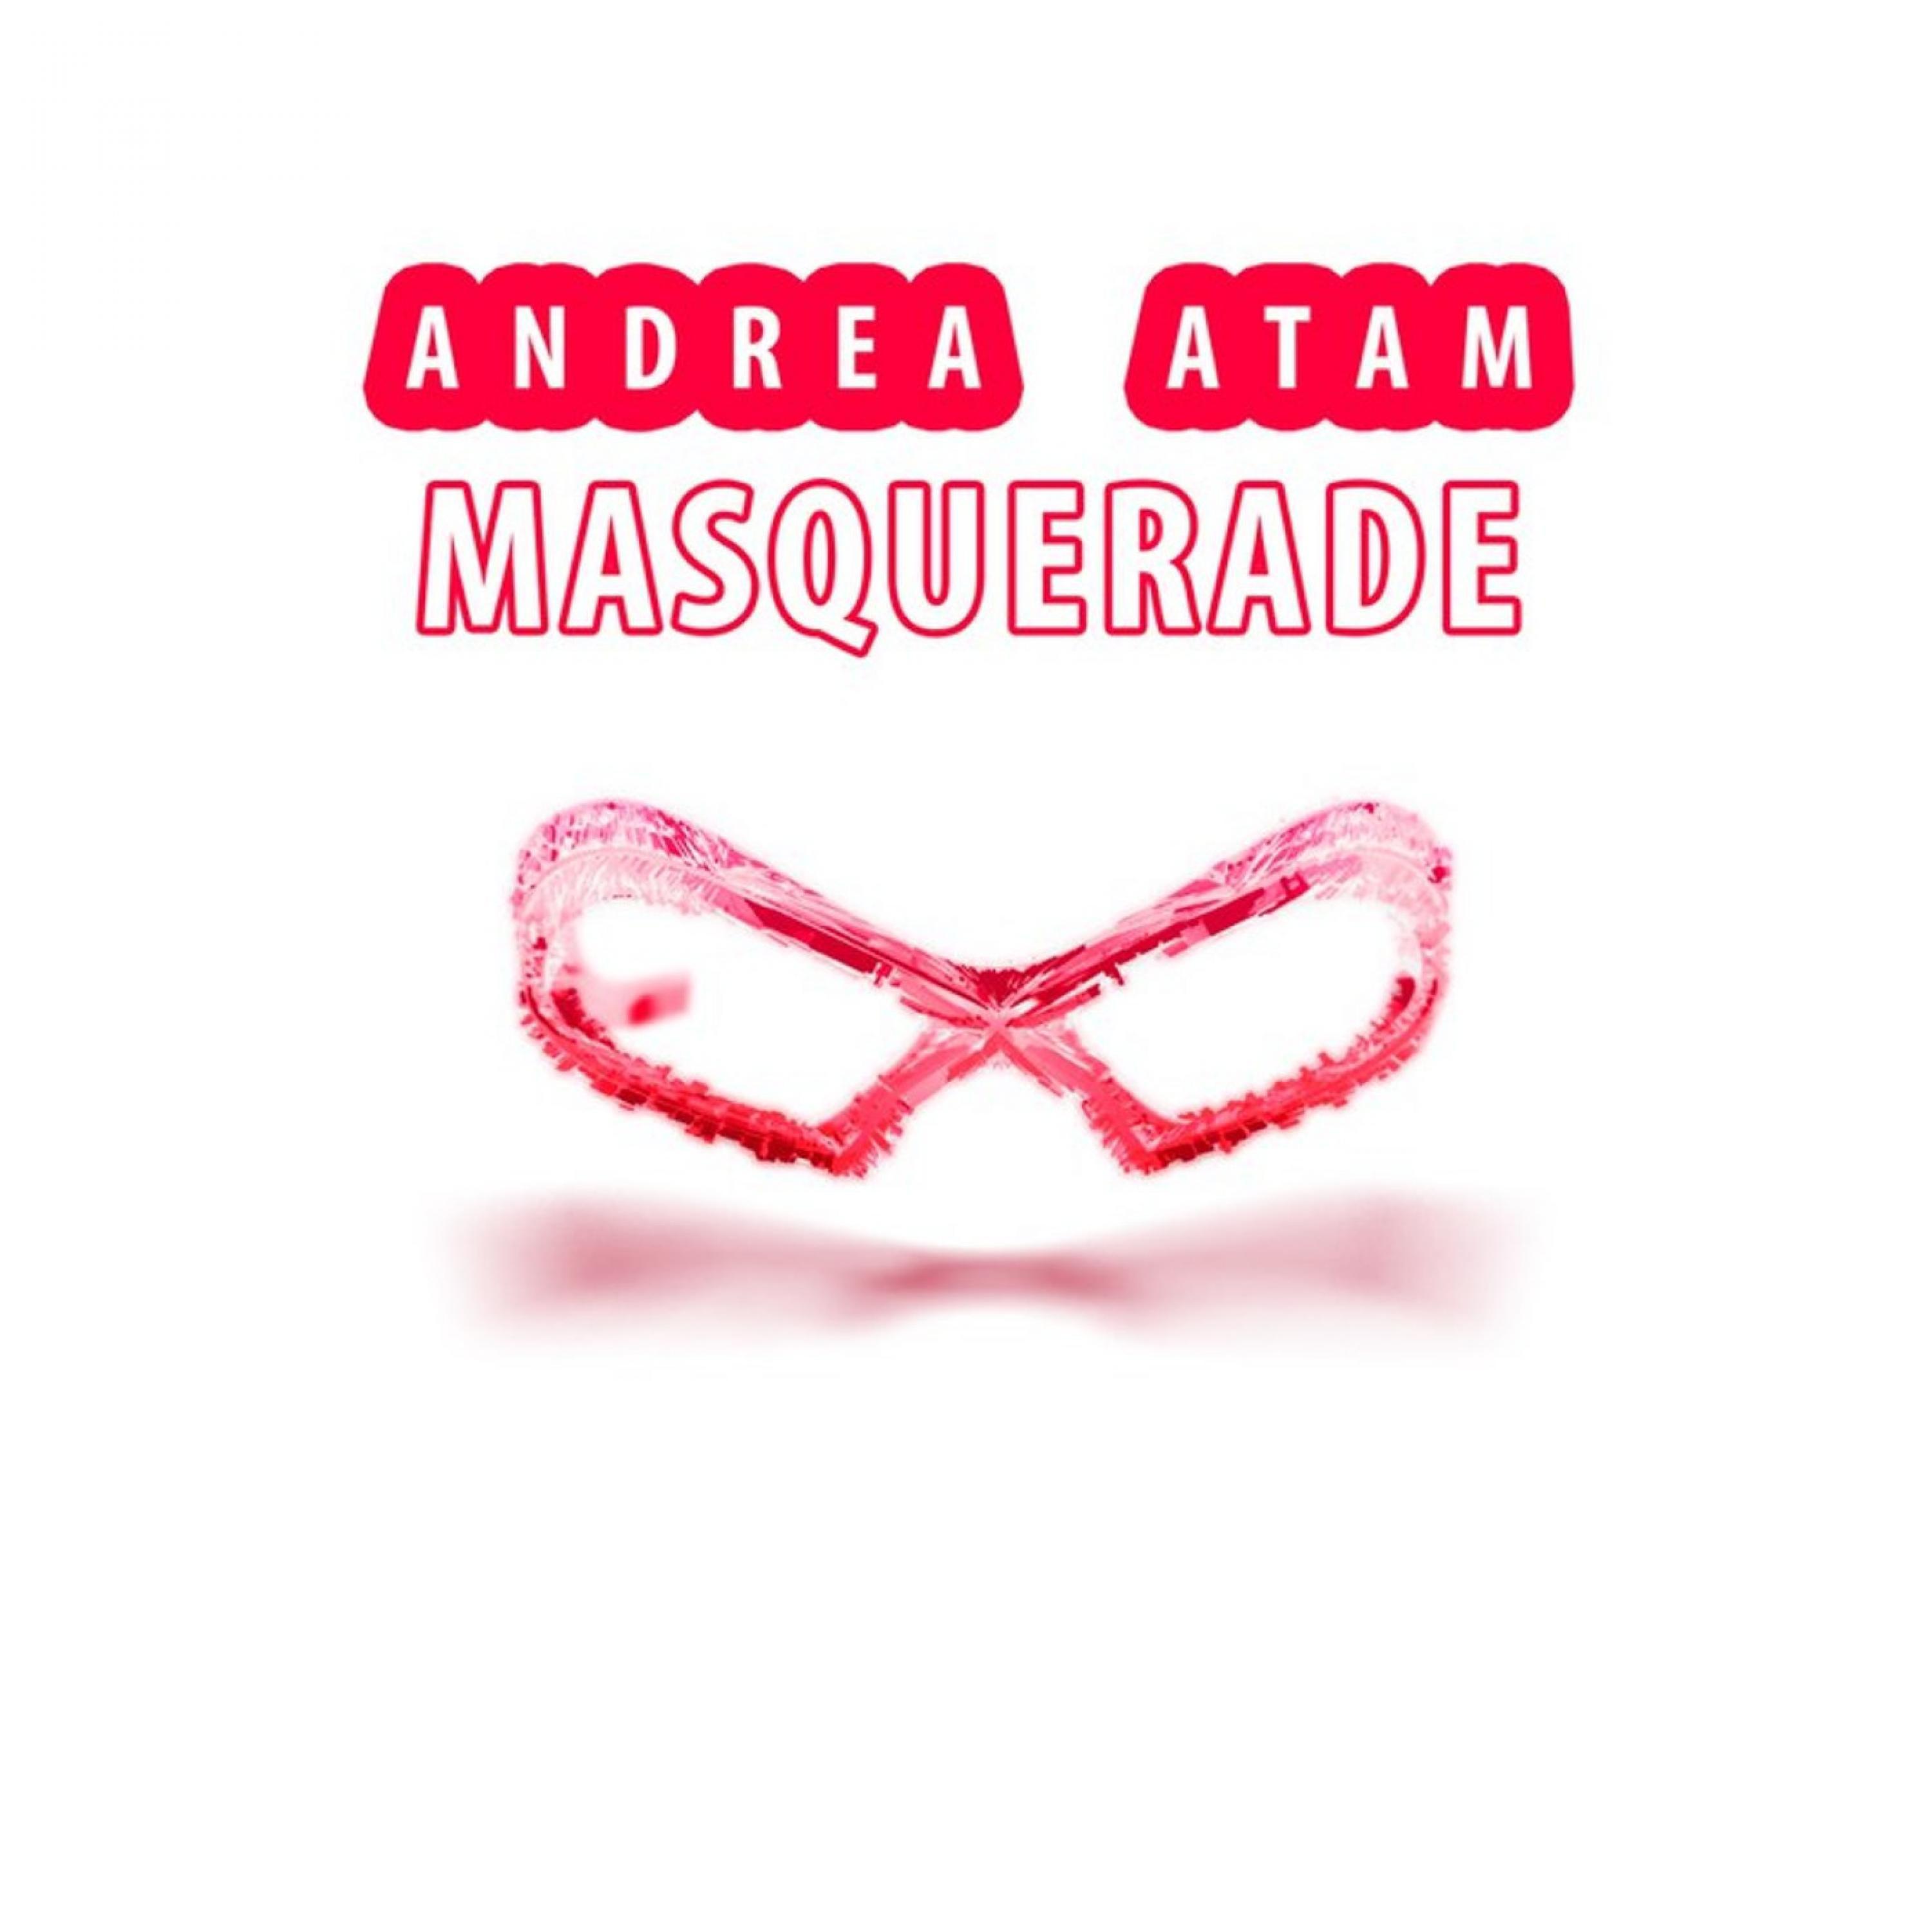 Andrea Atam - Phantom (Original Mix)